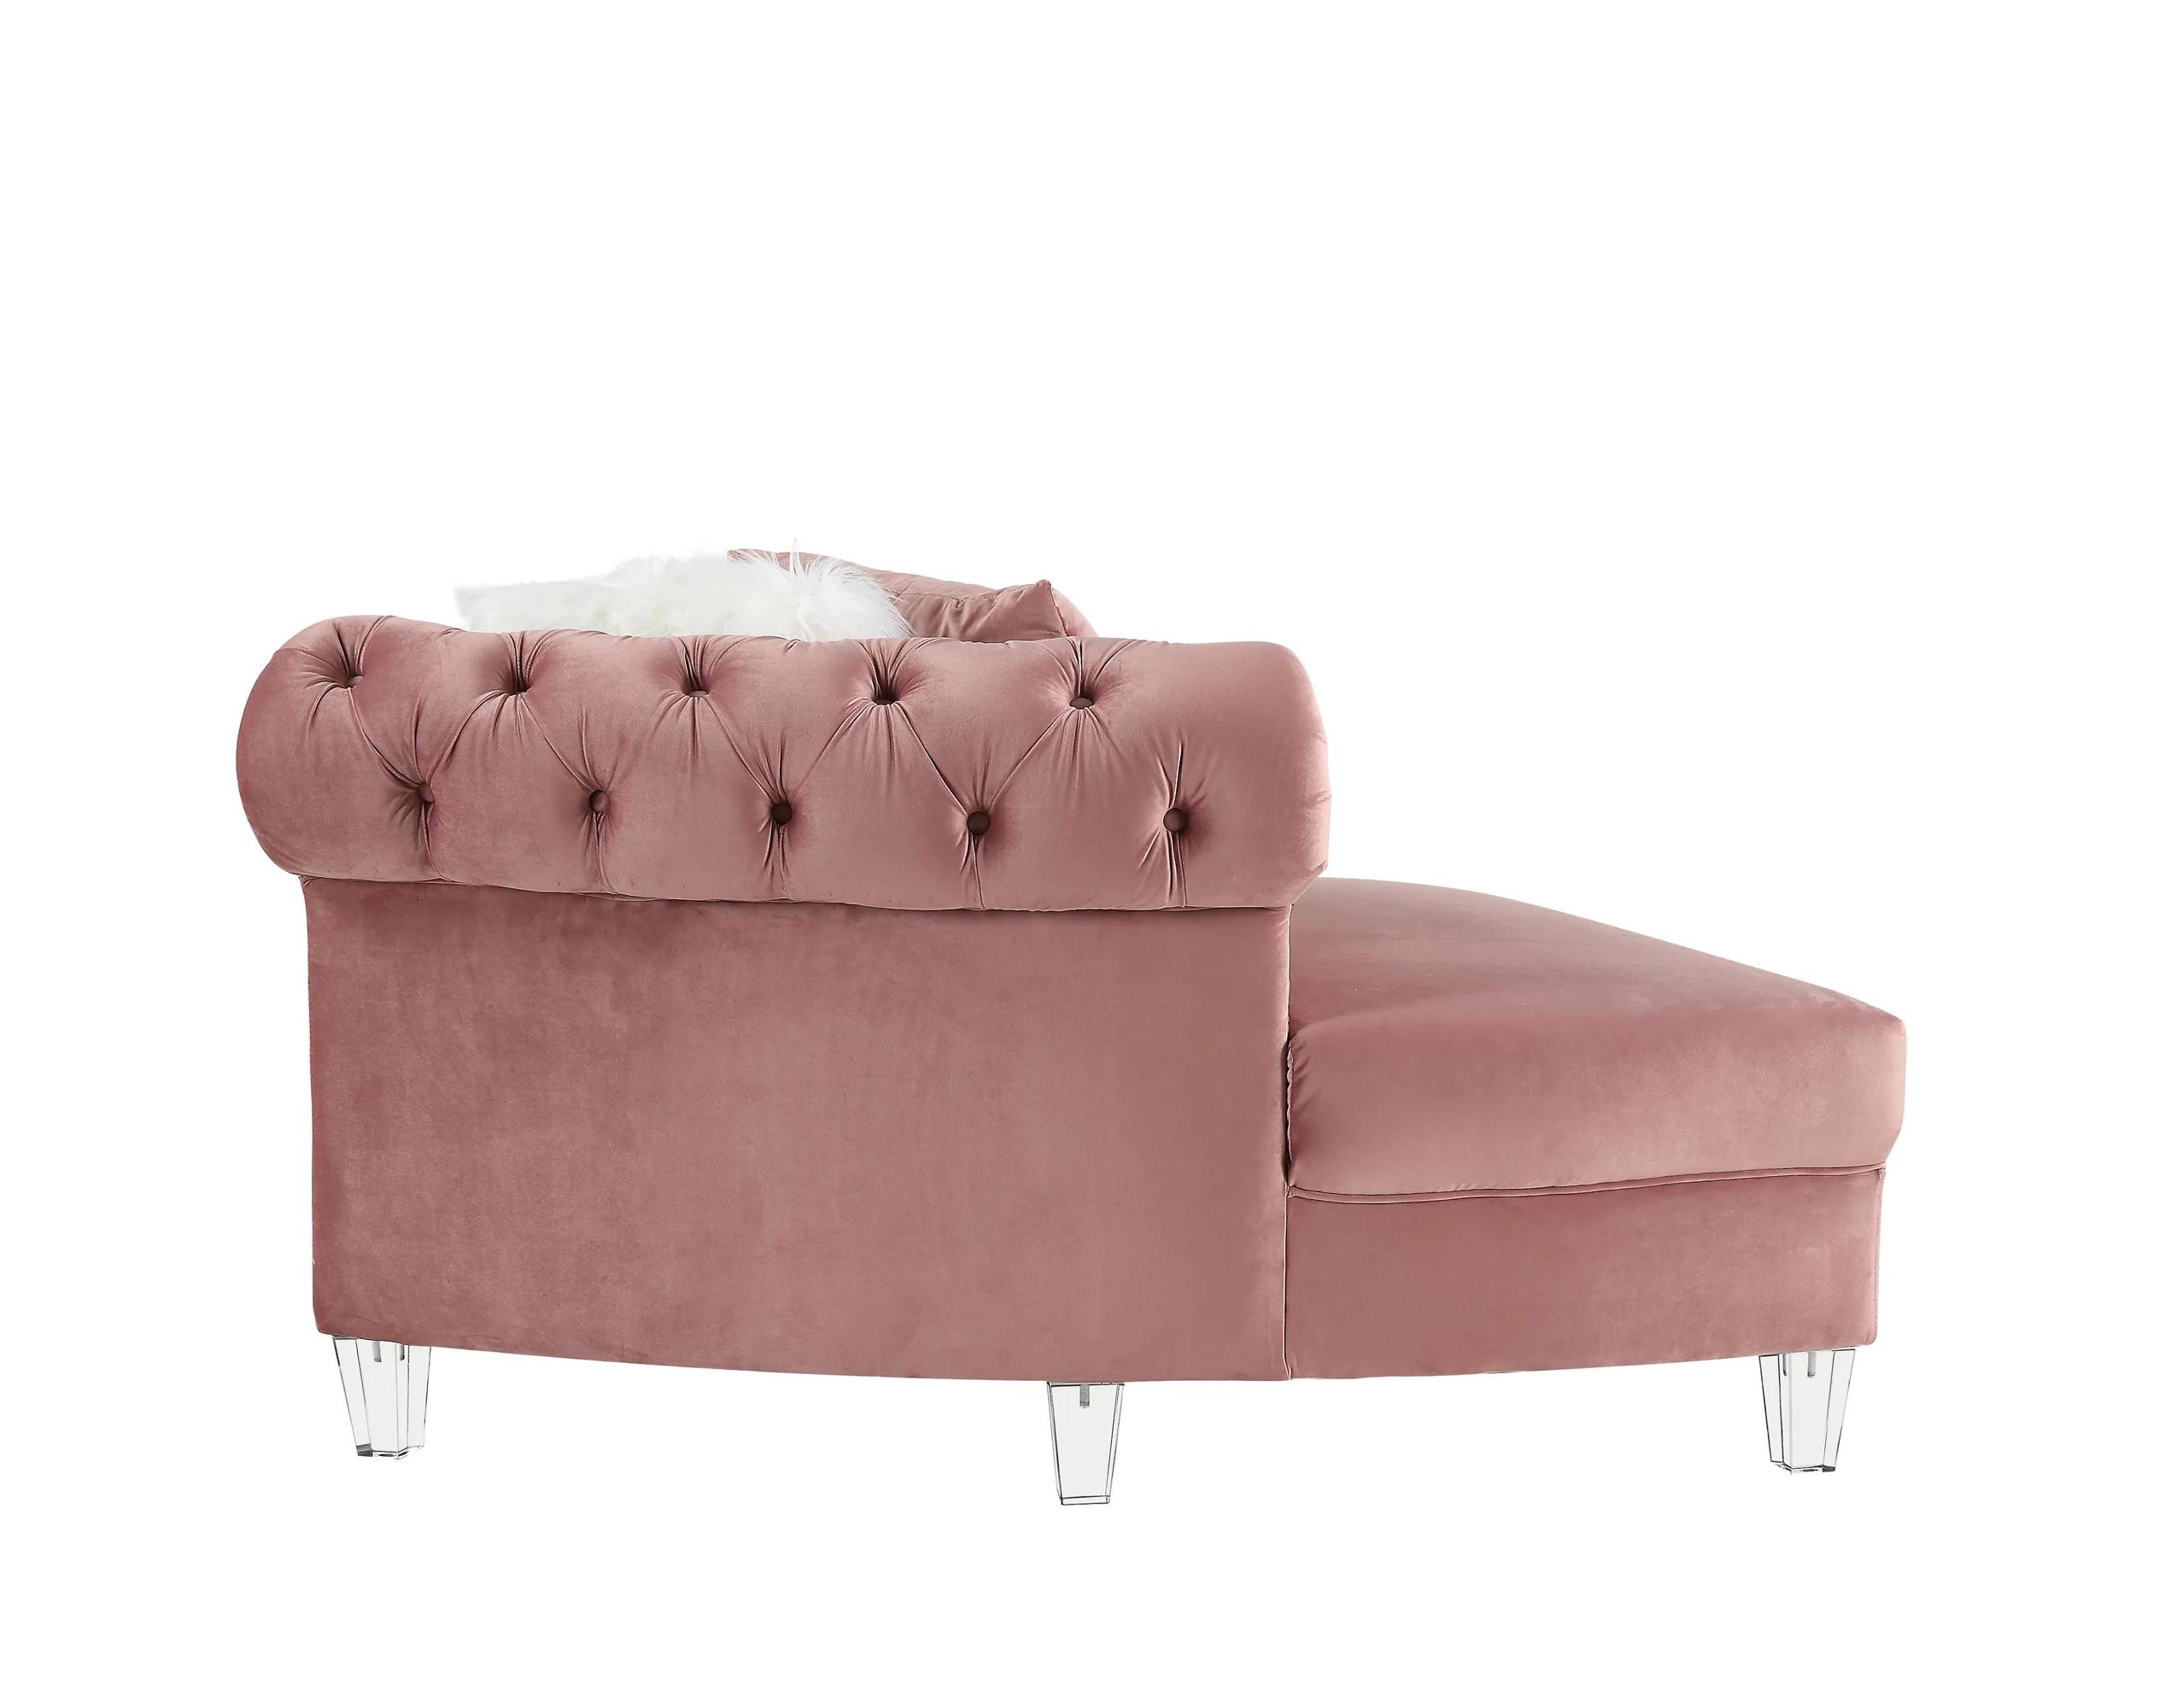 

    
Acme Furniture Ninagold Sectional Sofa Pink 57360-4pcs
